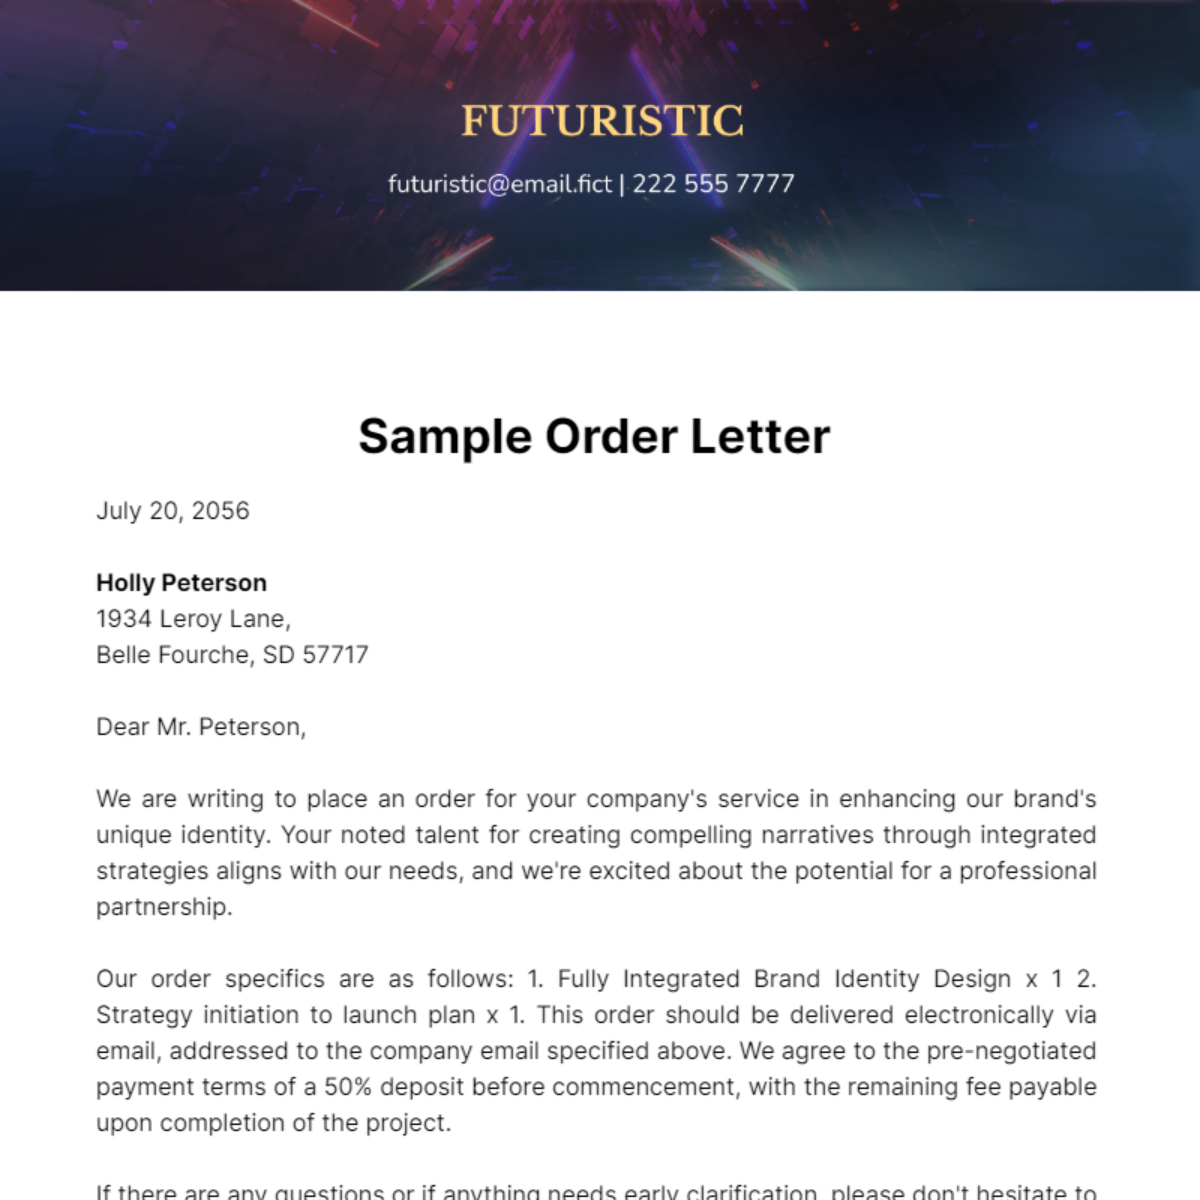 Sample Order Letter Template